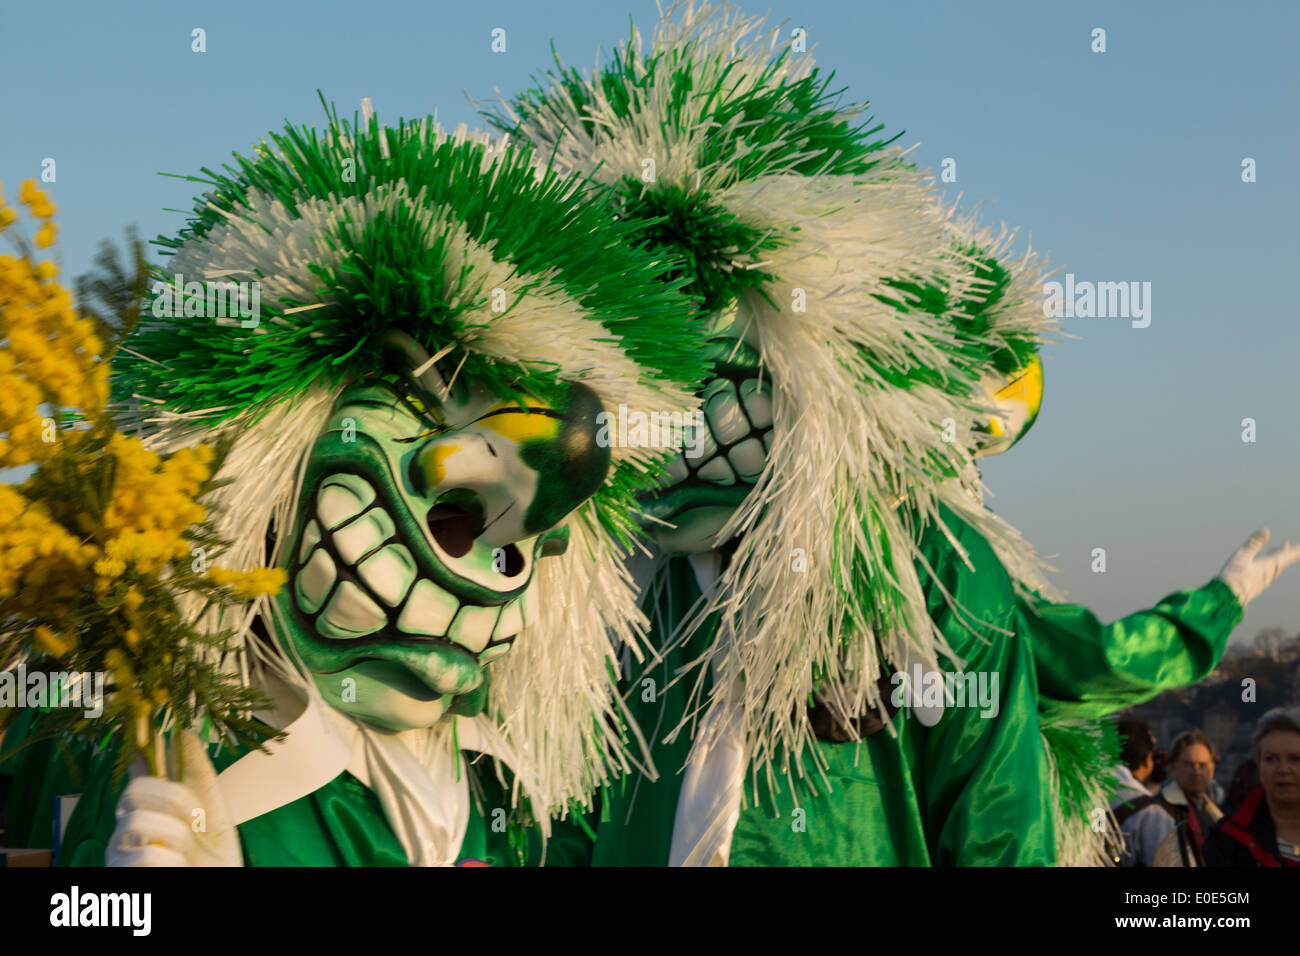 Une photographie de certains masques colorés et de costumes à Carnaval (Carnival). Celle-ci est connue comme une Waggi. Banque D'Images